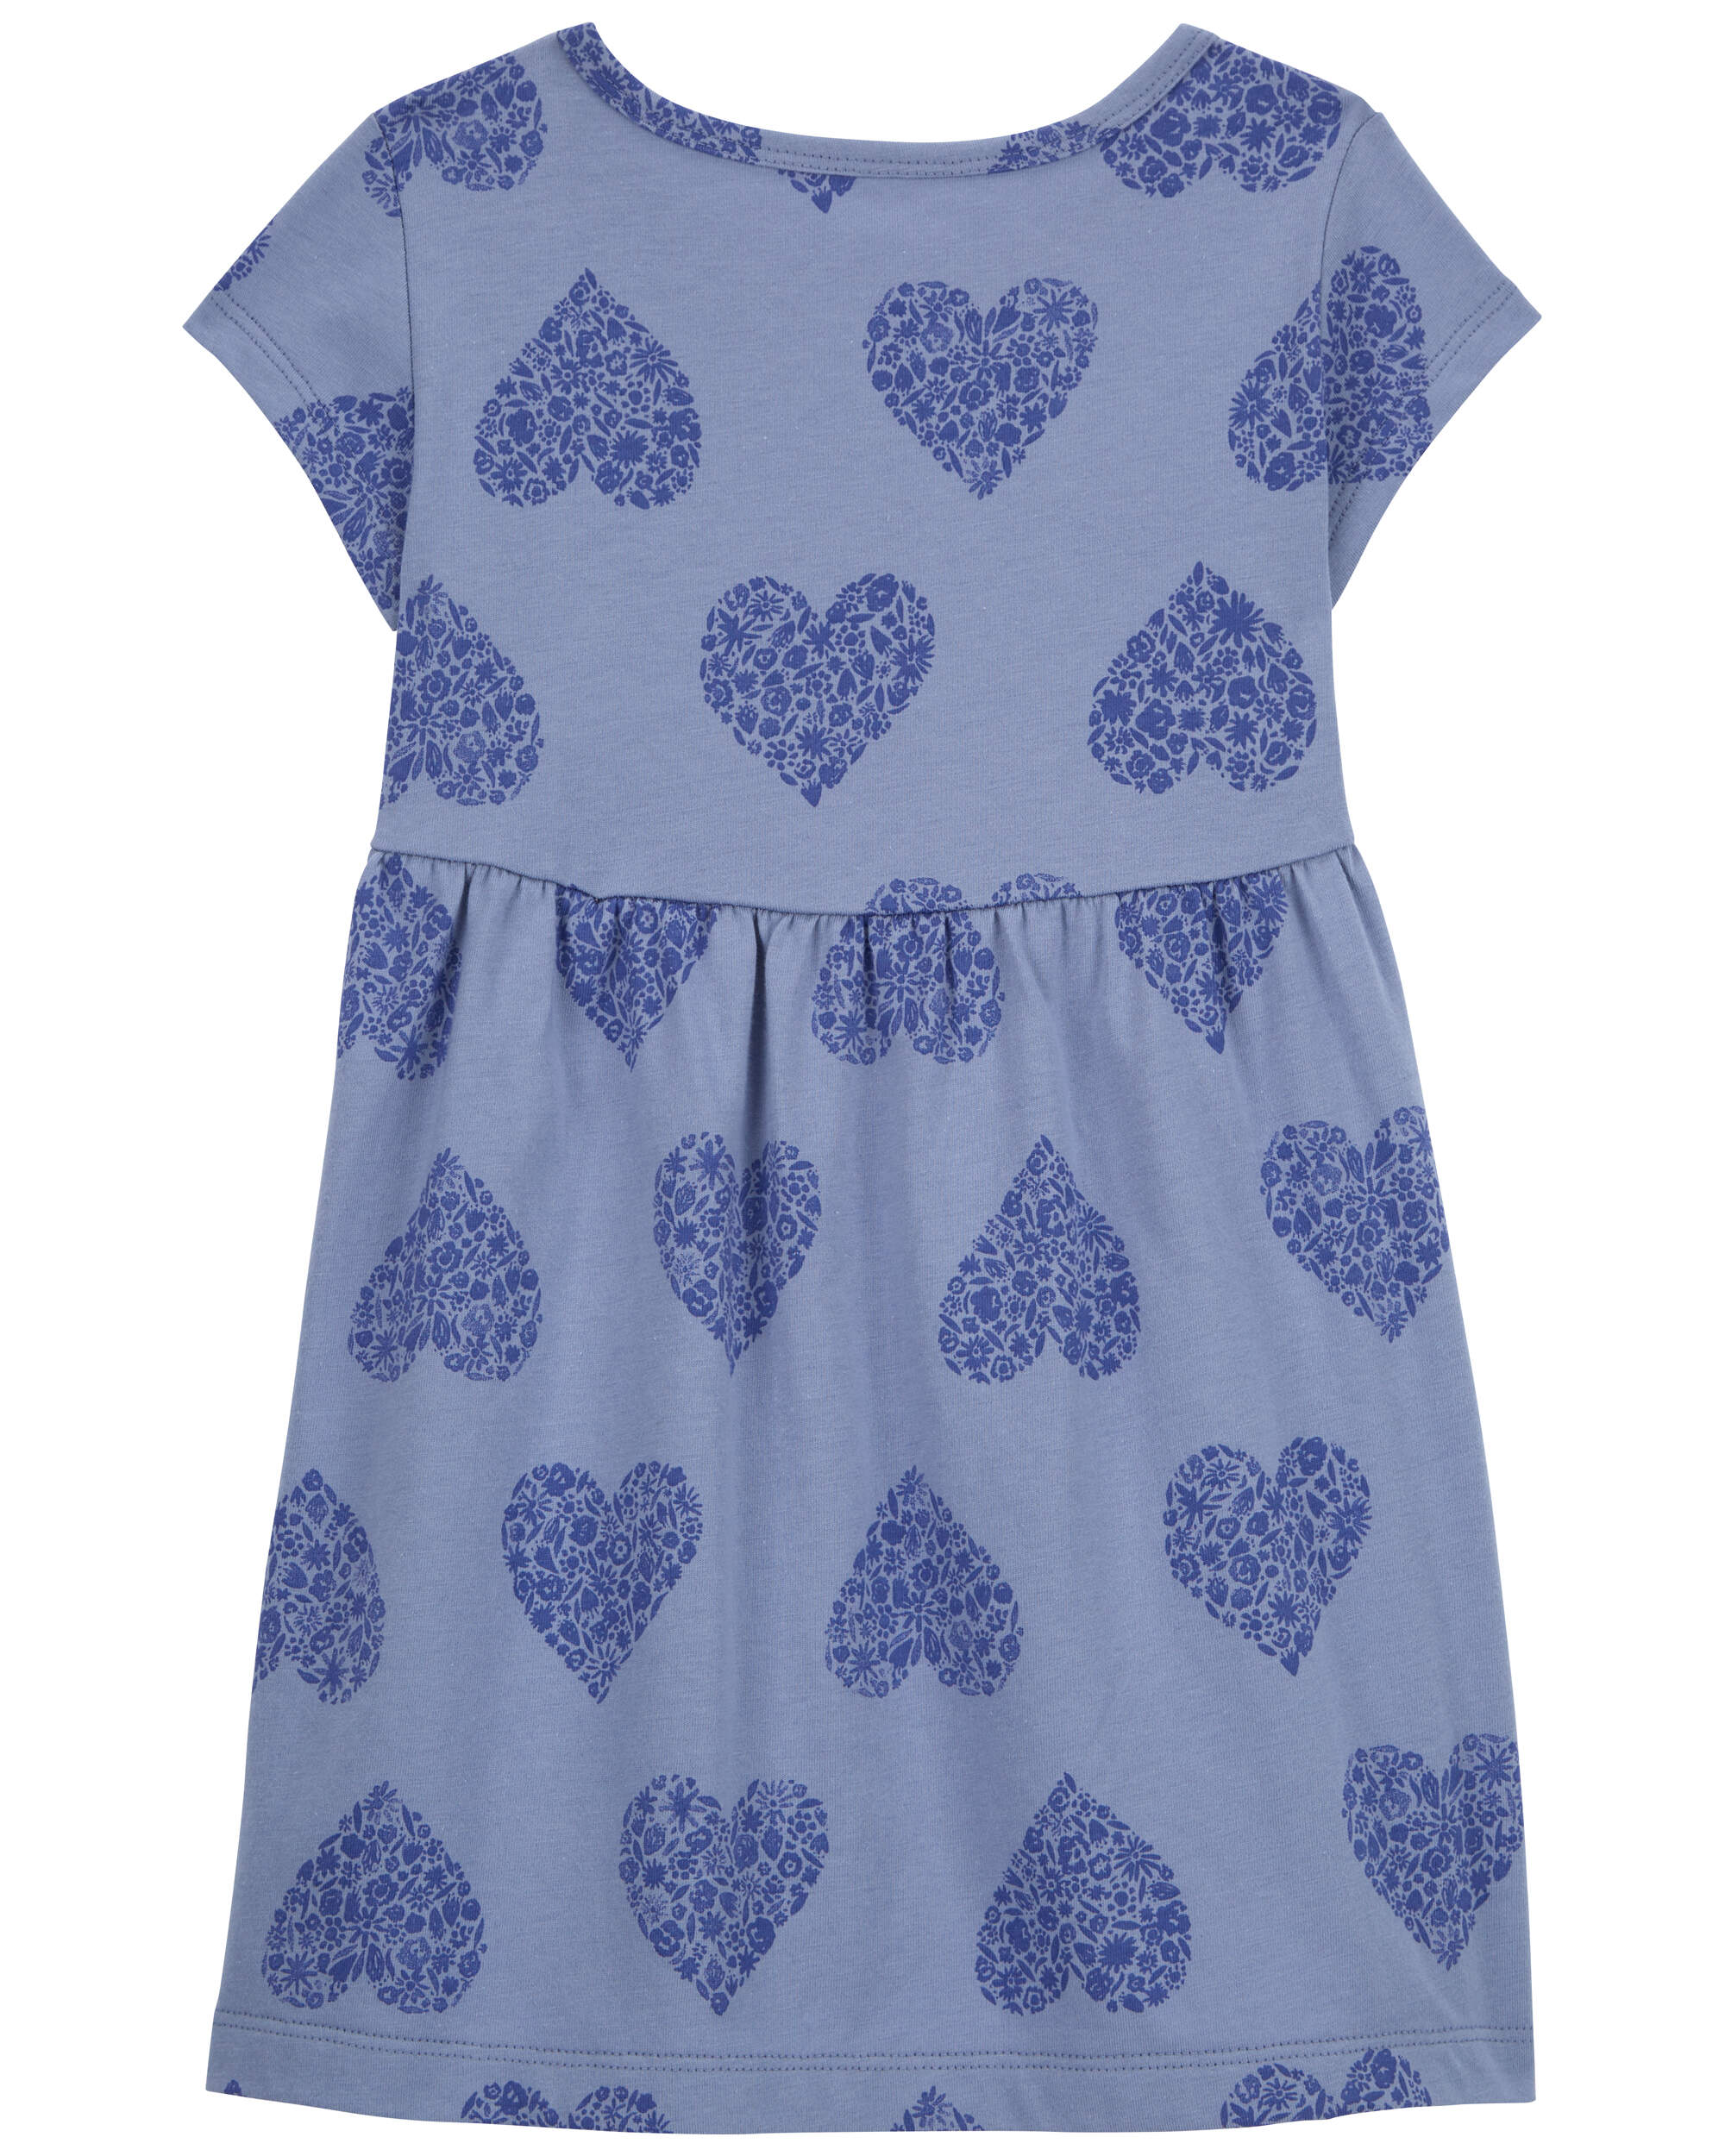 Toddler Heart Jersey Dress